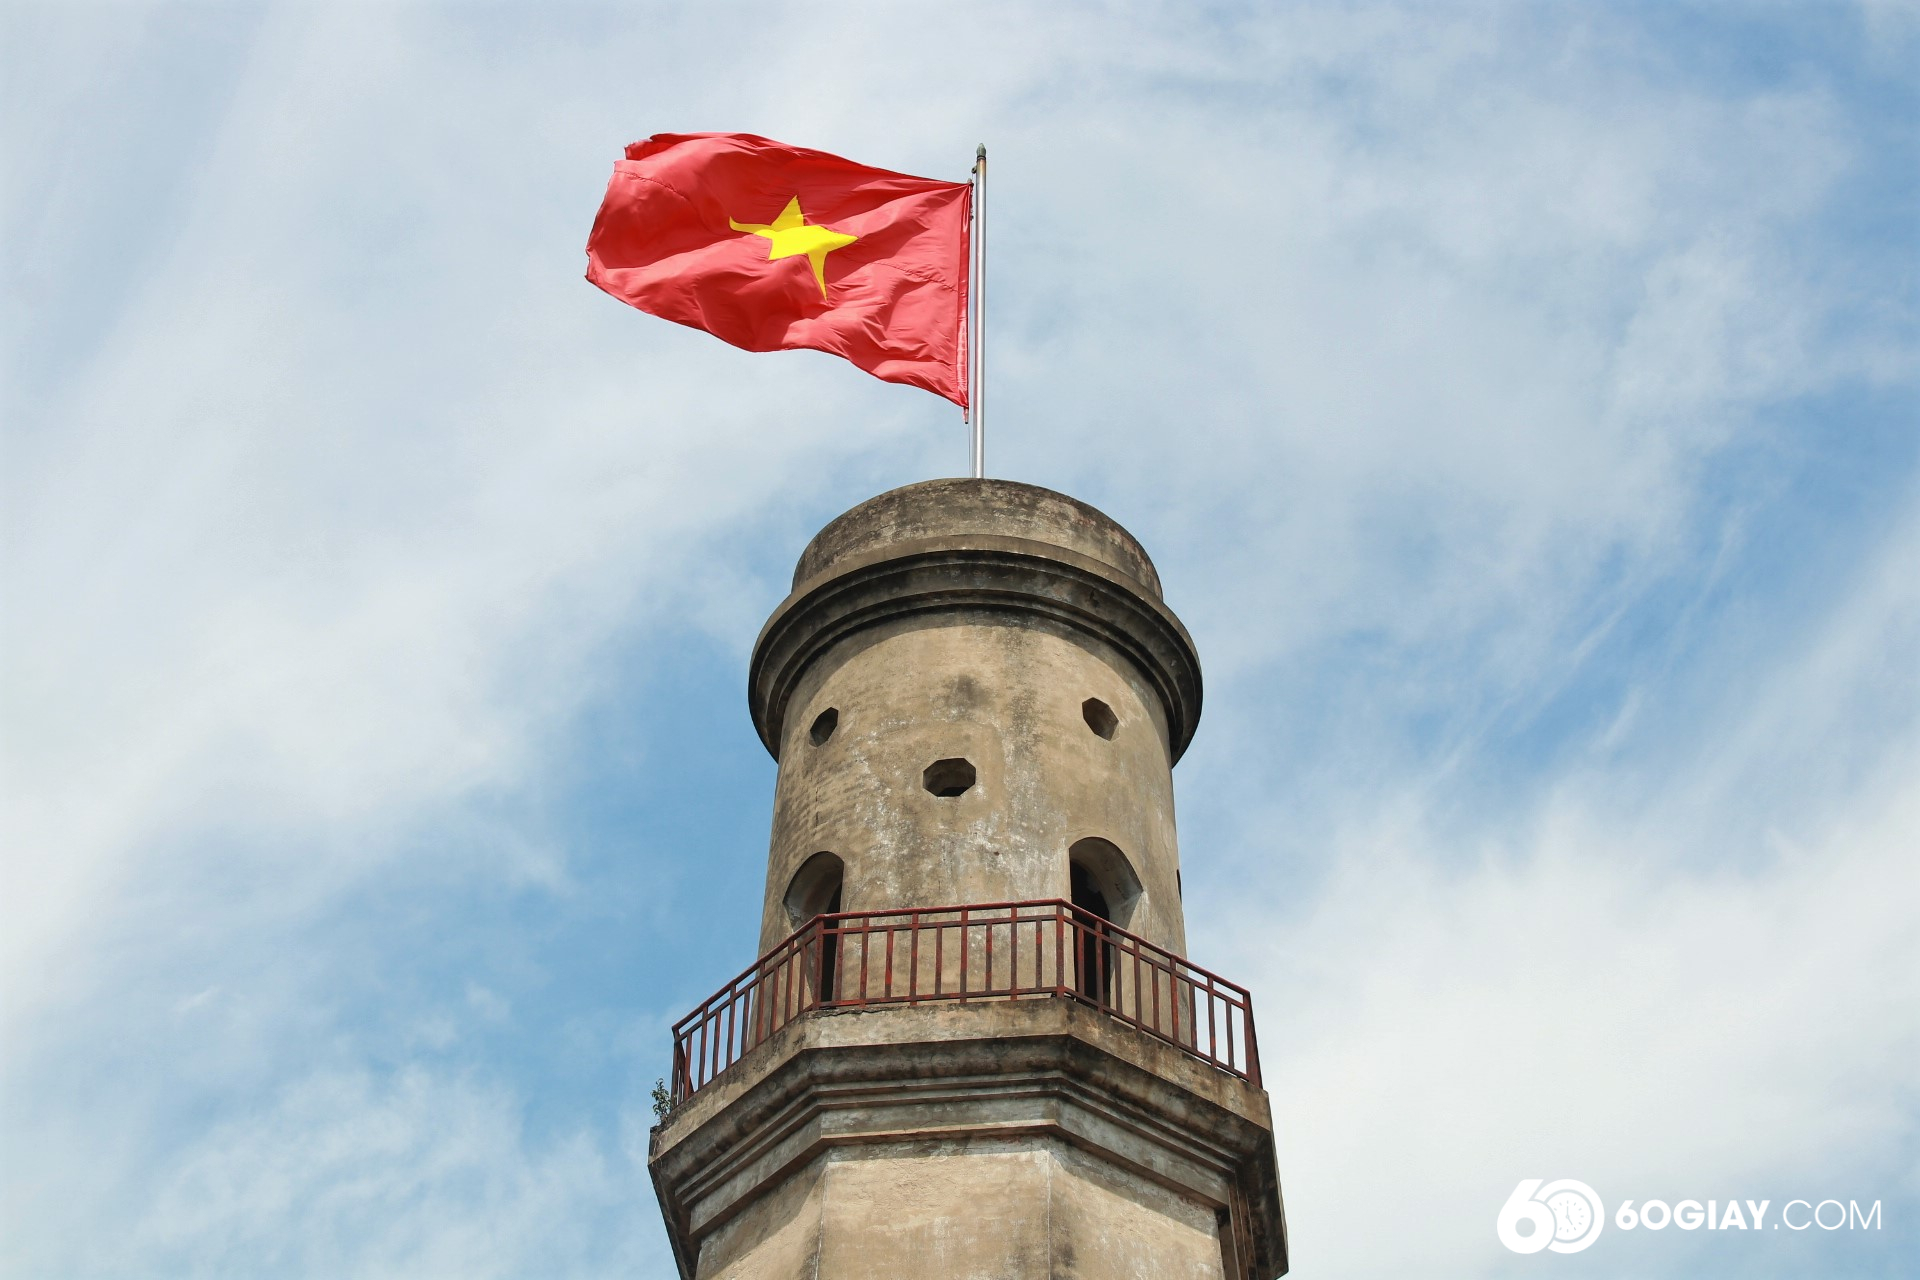 Cột cờ Nam Định được xây dựng vào năm Gia Long thứ 11 (năm 1812) và đến năm Thiệu Trị thứ 3 (năm 1843) thì hoàn thành.